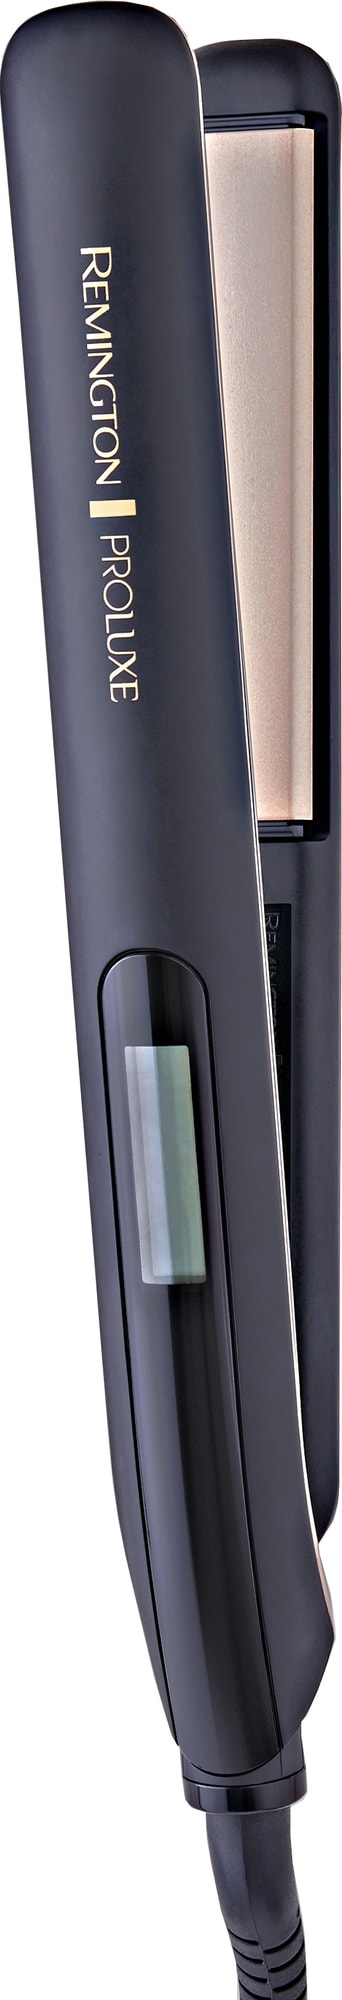 Remington Proluxe Midnight Edition suoristusrauta S9100B - Gigantti  verkkokauppa